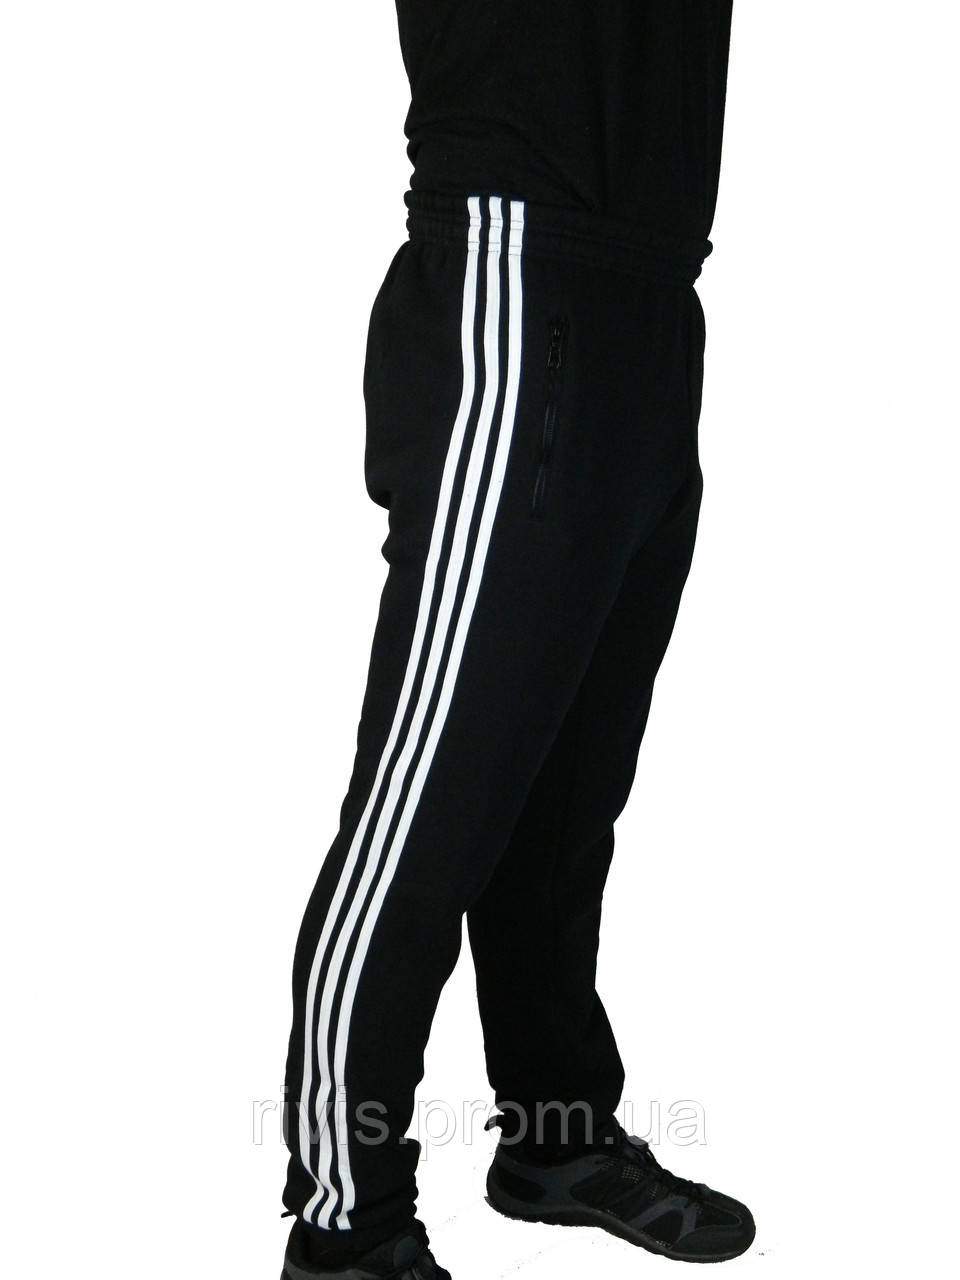 

Штаны трикотажные мужские adidas,три полосы,классика на резинке,зауженные 46-52,Турция., Синий